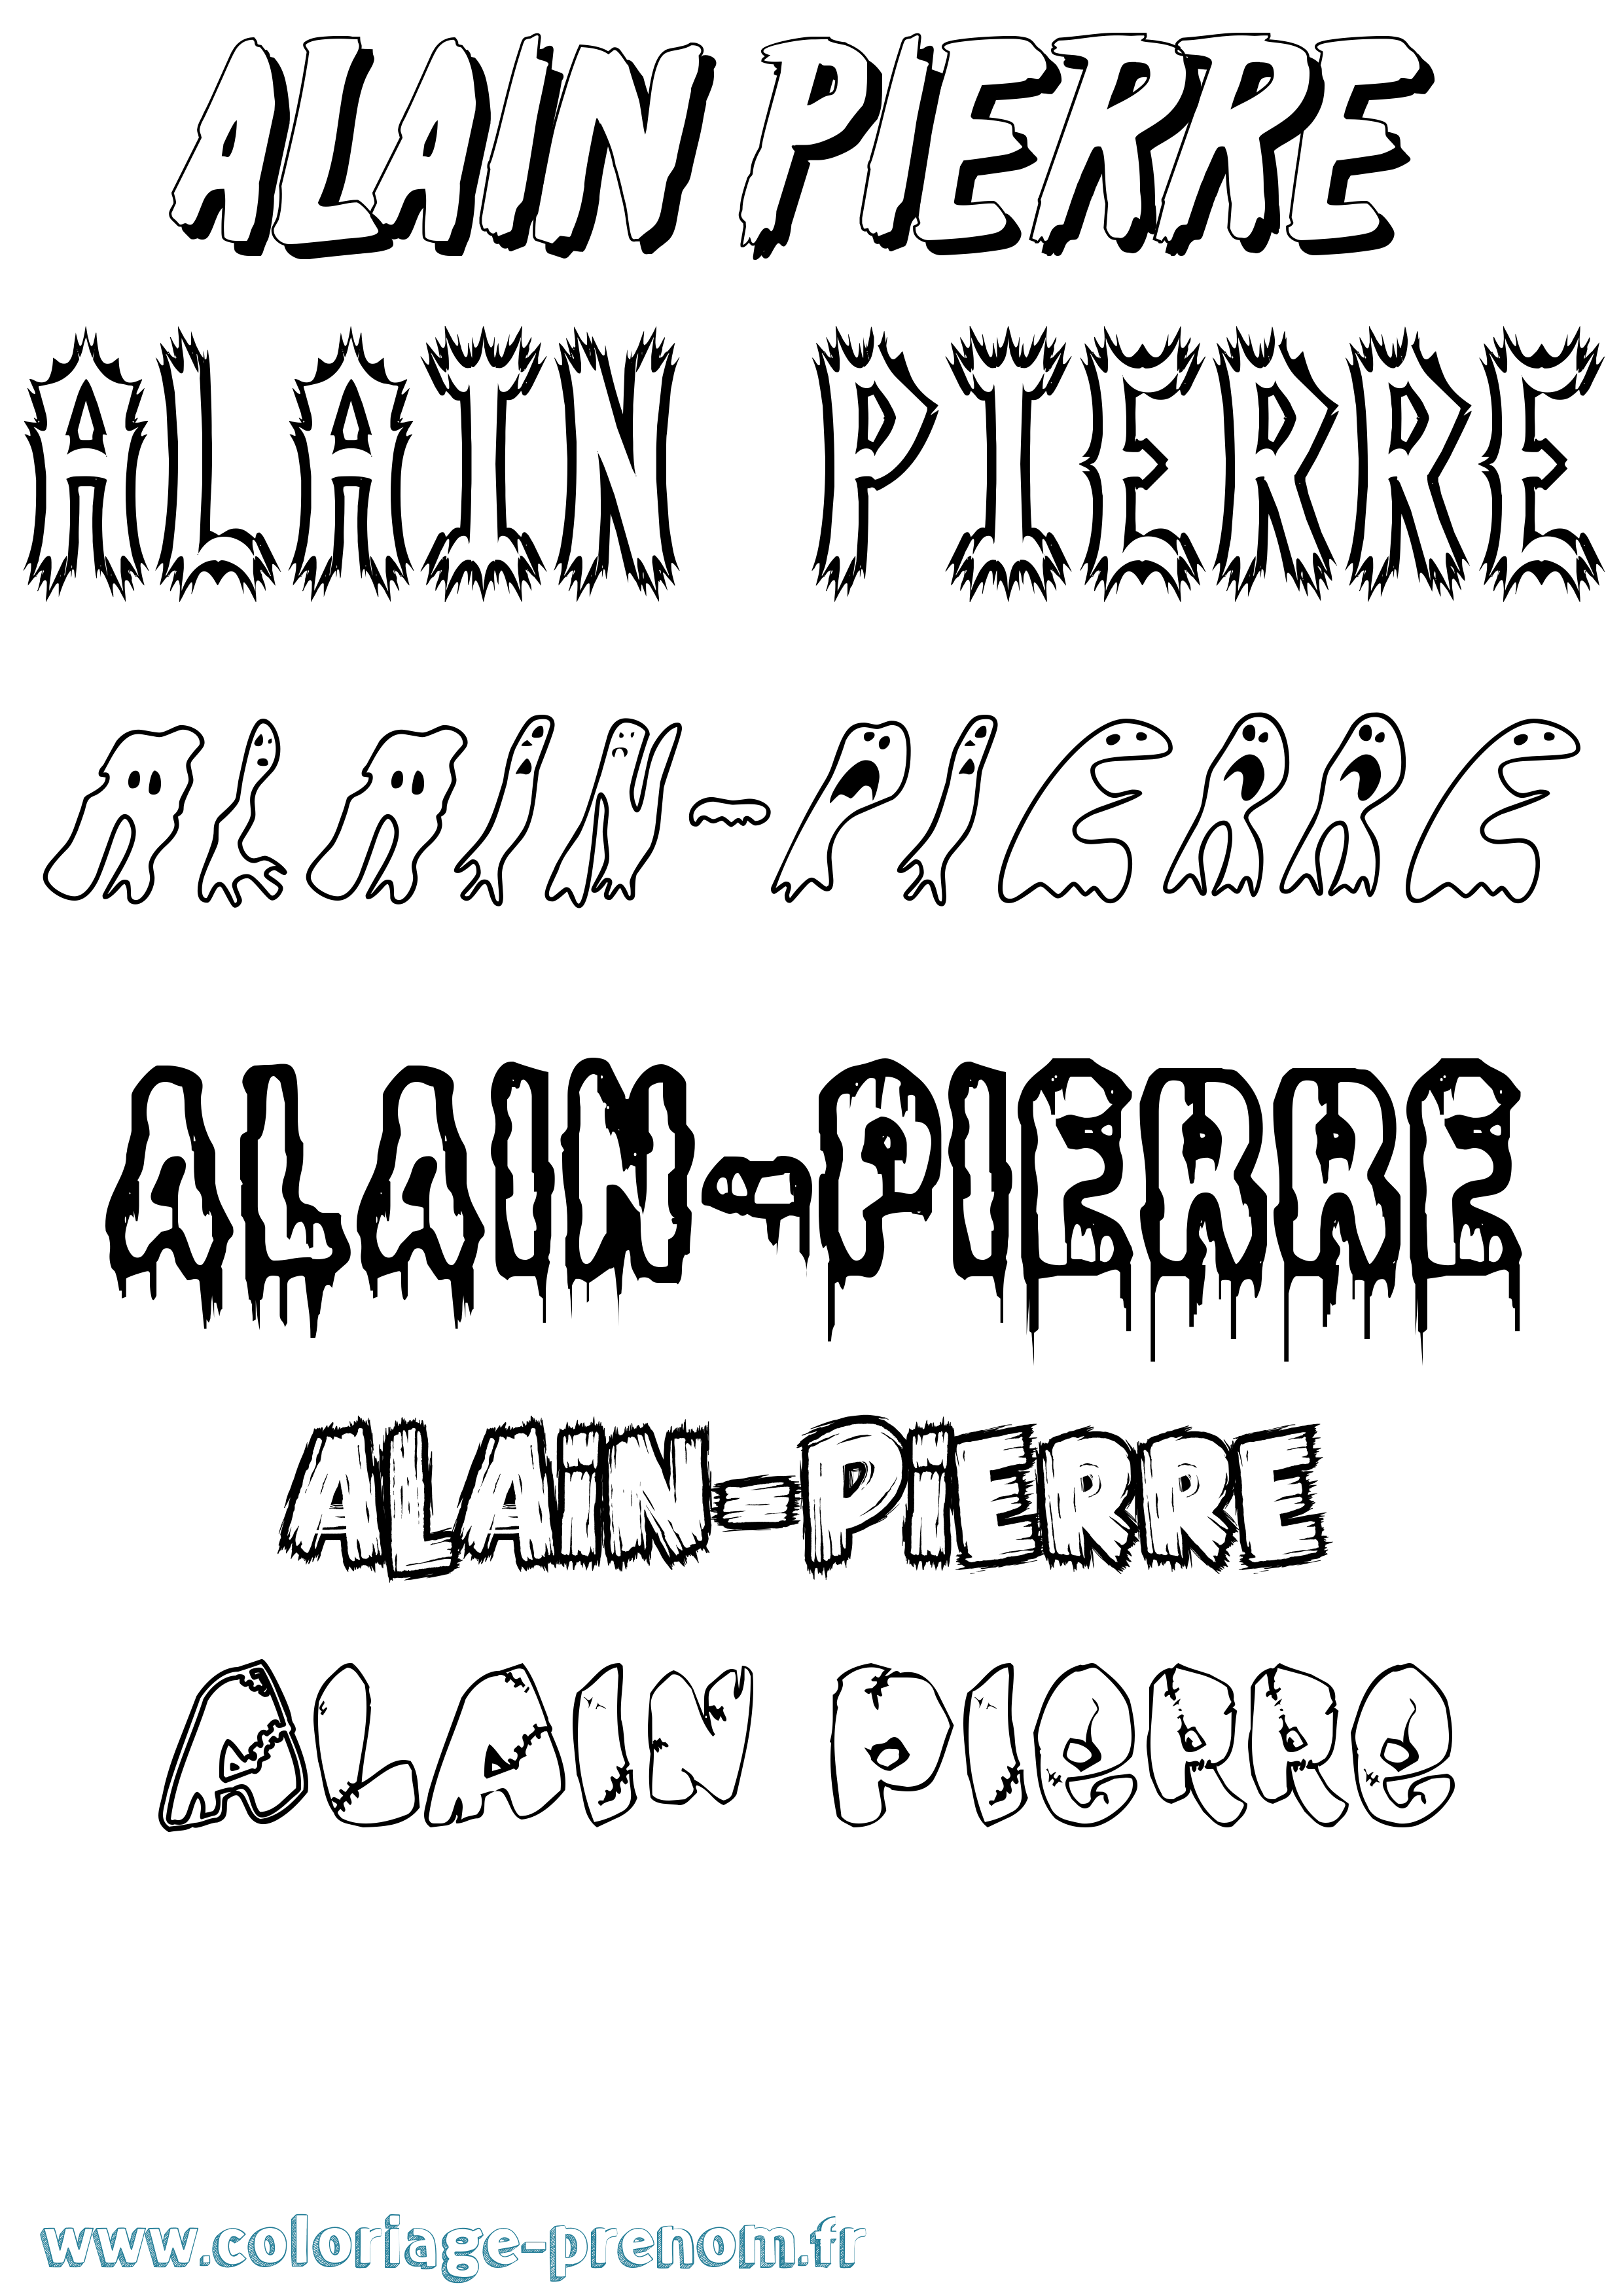 Coloriage prénom Alain-Pierre Frisson